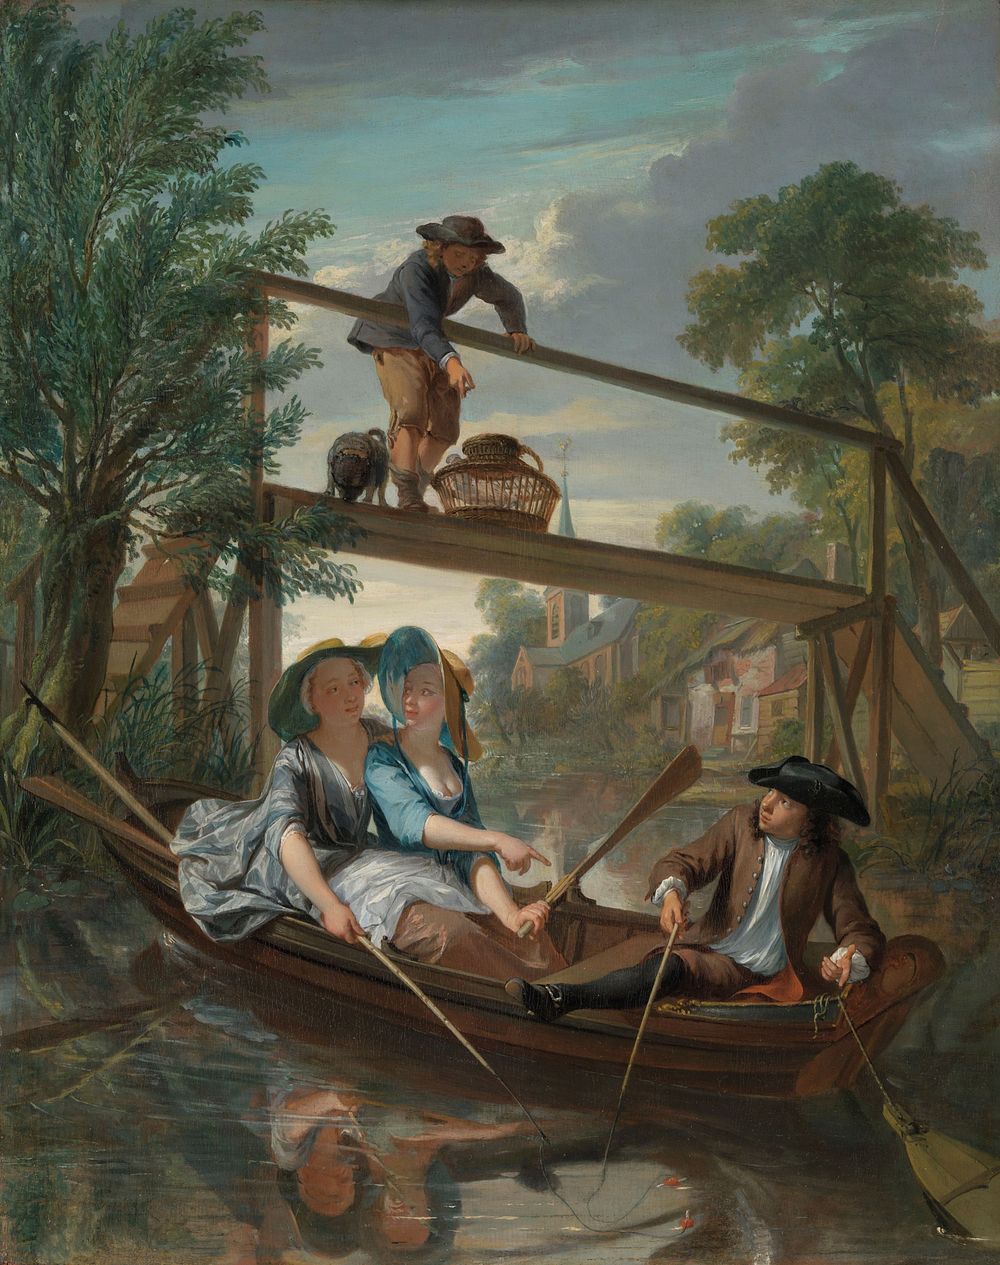 De hengelaars (c. 1744) by Nicolaas Verkolje